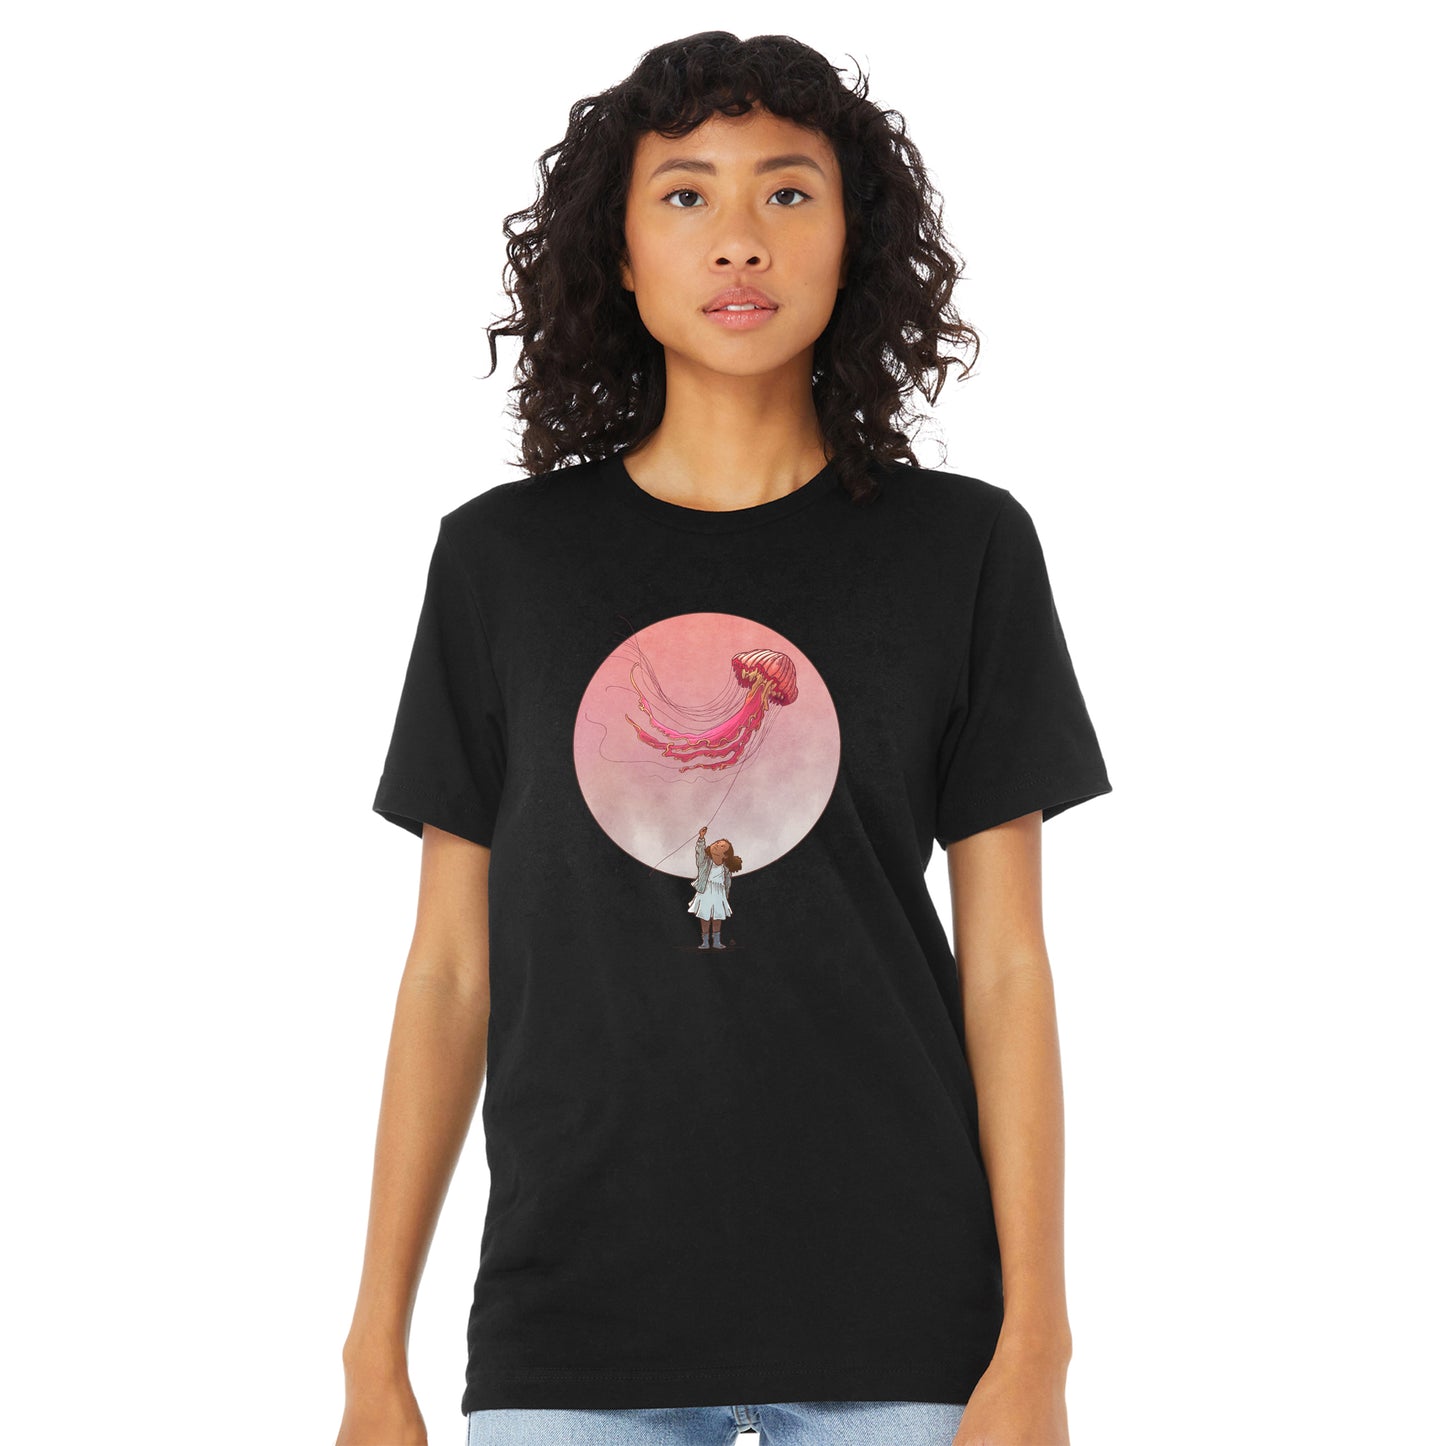 T-shirt unisexe : Cerf-volant océanique